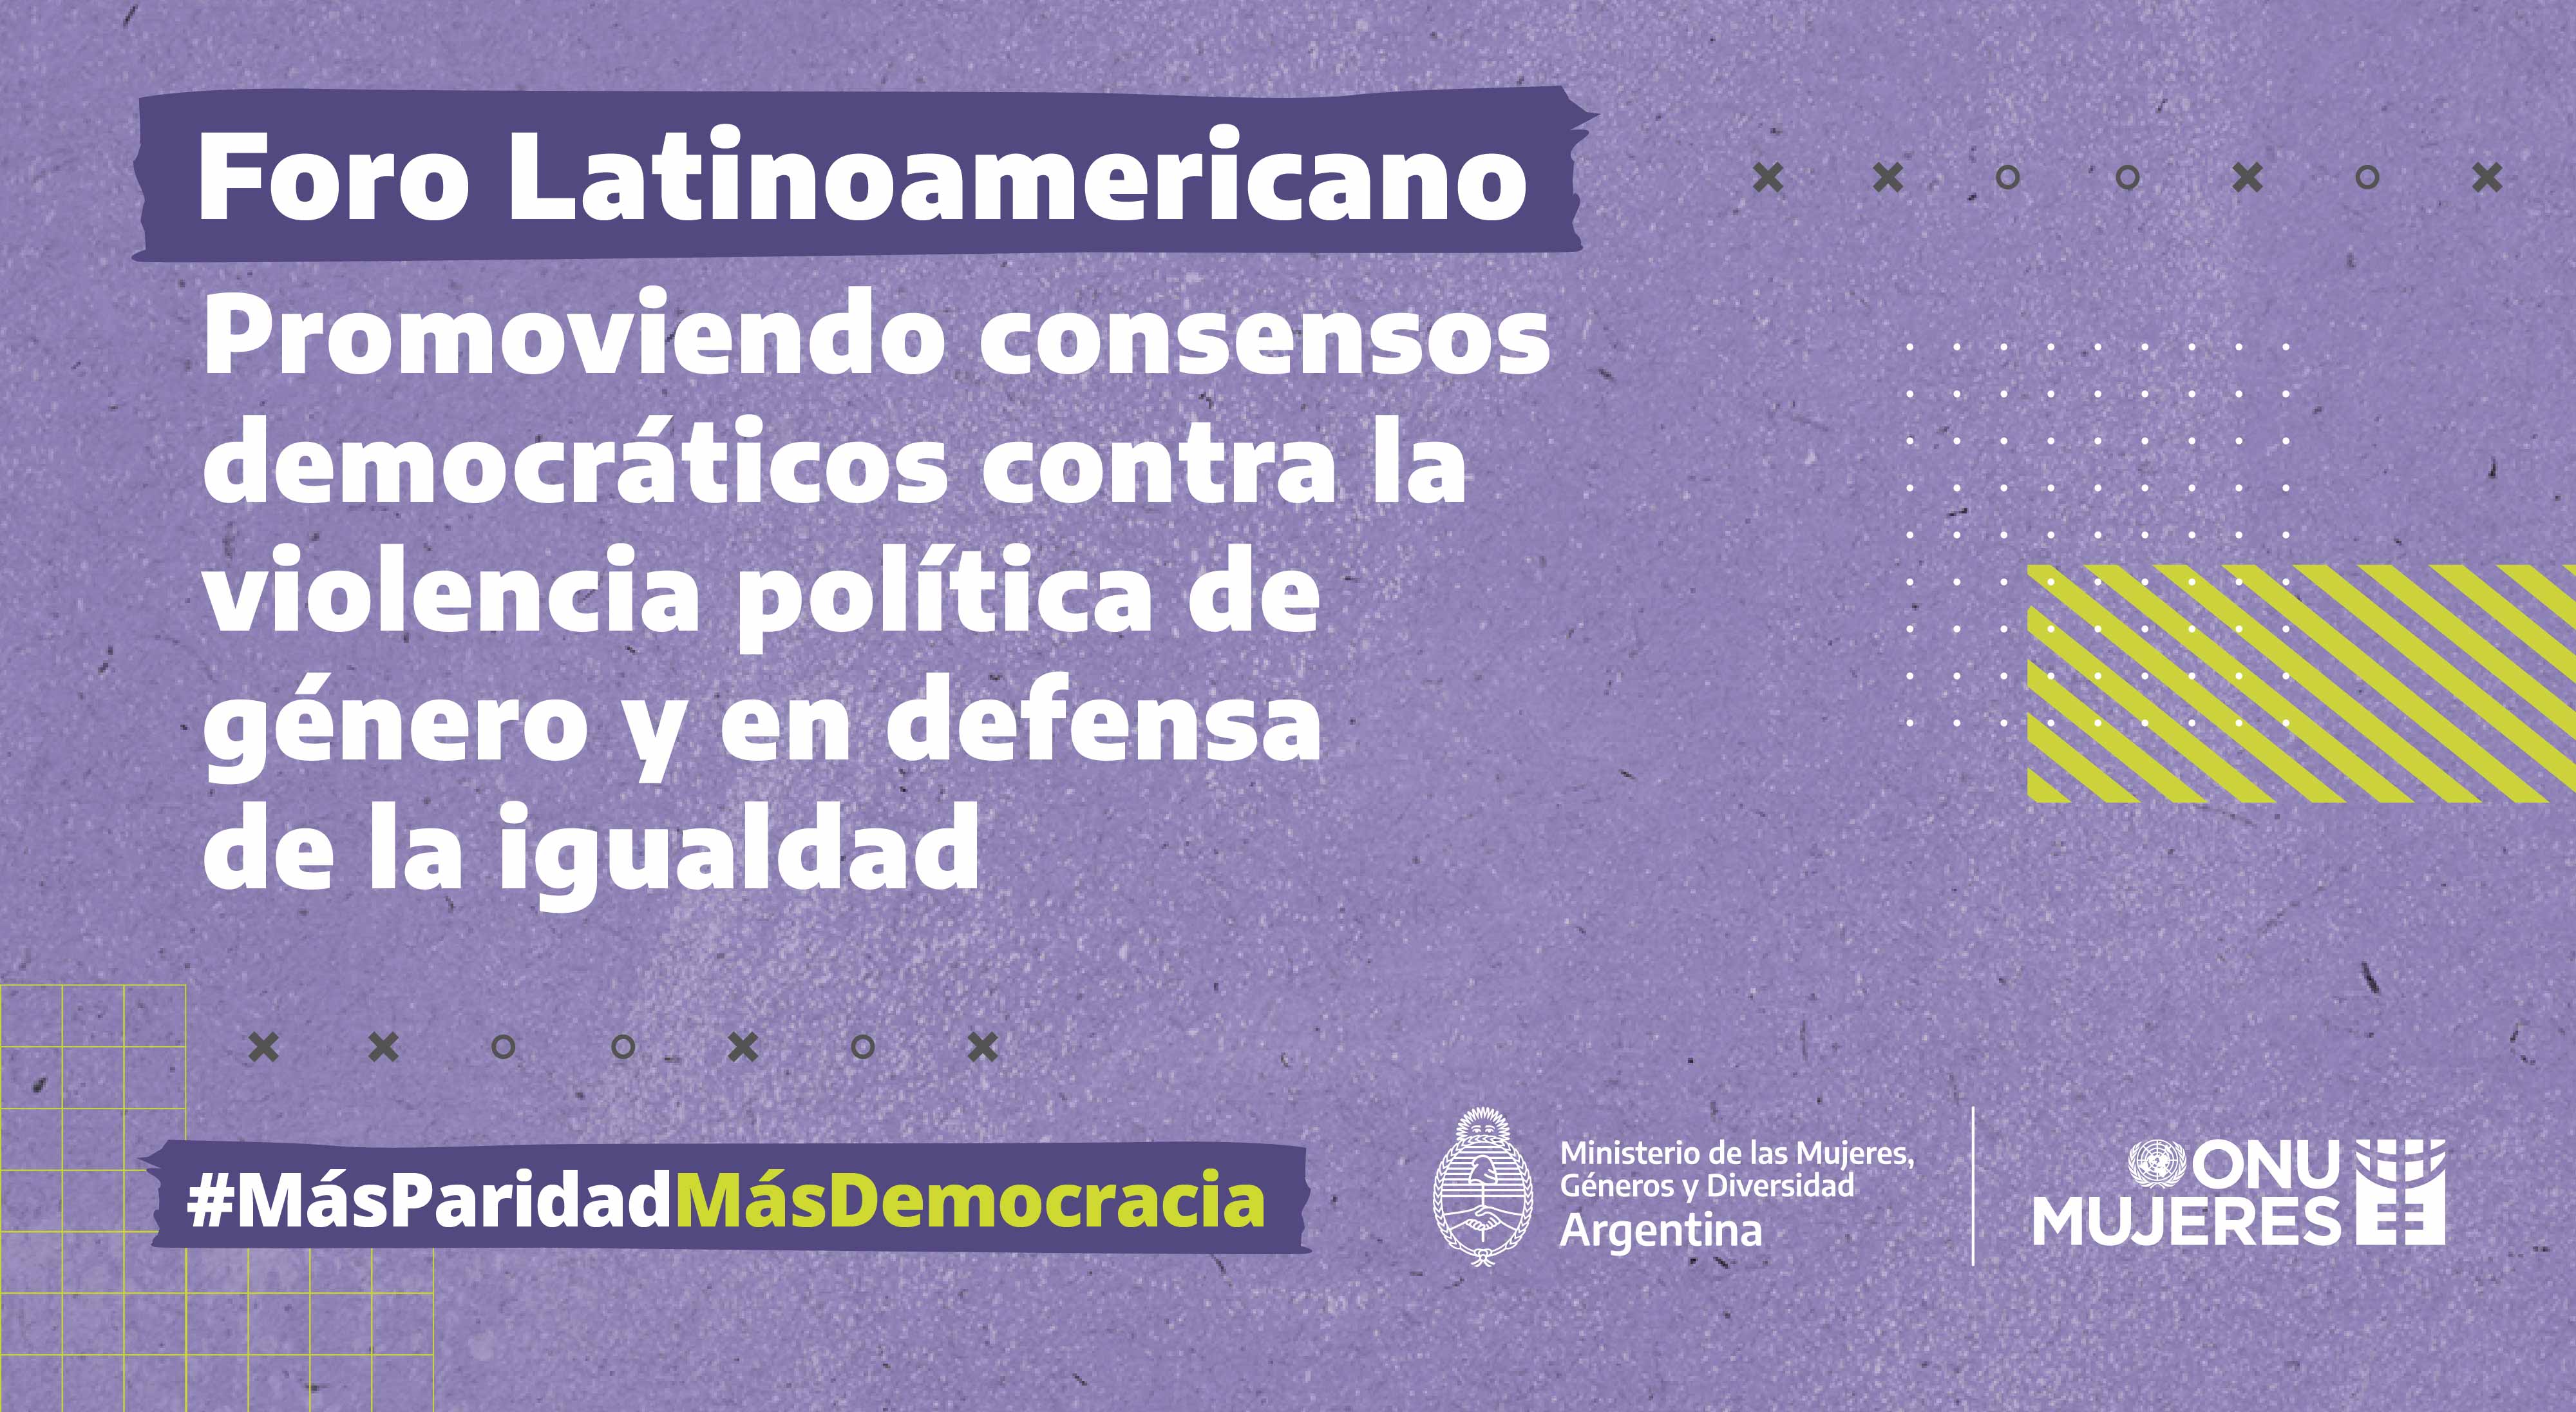 America Latina Promueve Consensos Democraticos Contra La Violencia Politica De Genero Y En